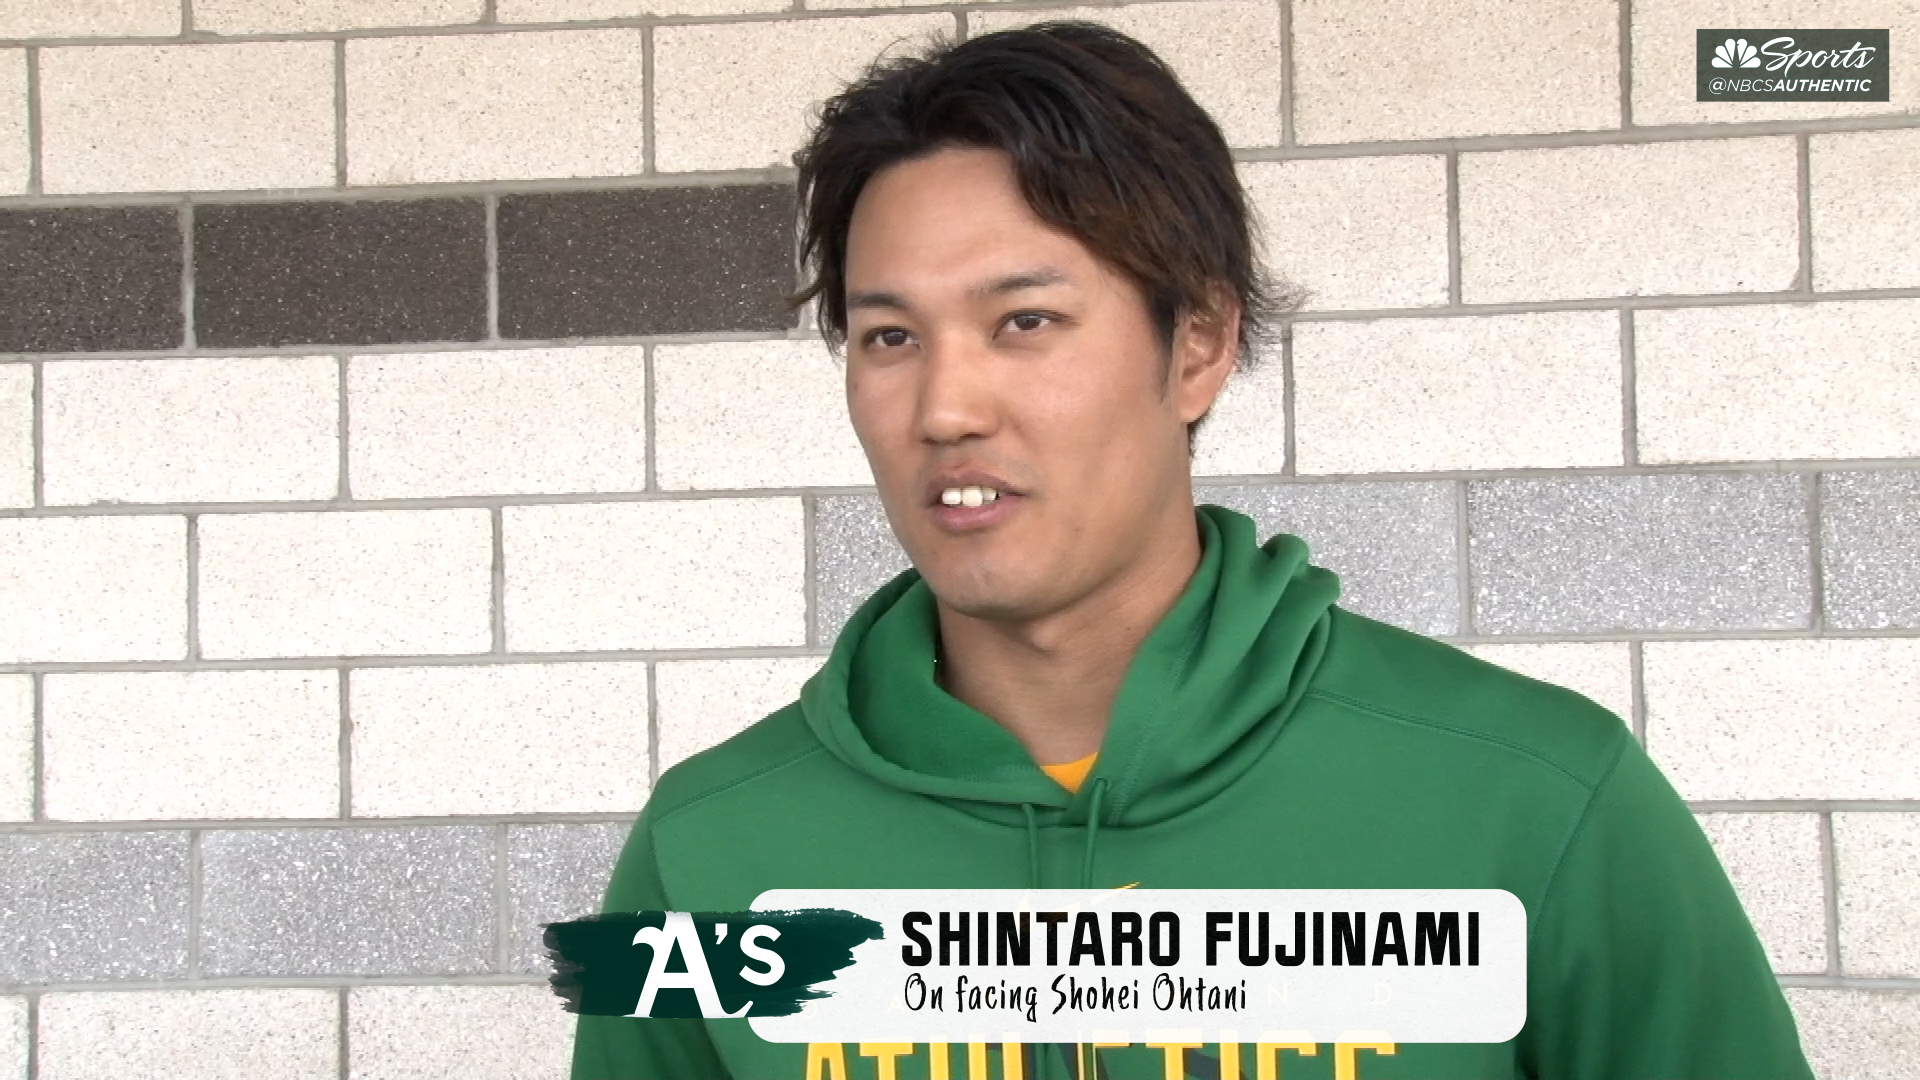 MLB on X: Shintaro Fujinami and Shohei Ohtani have been facing